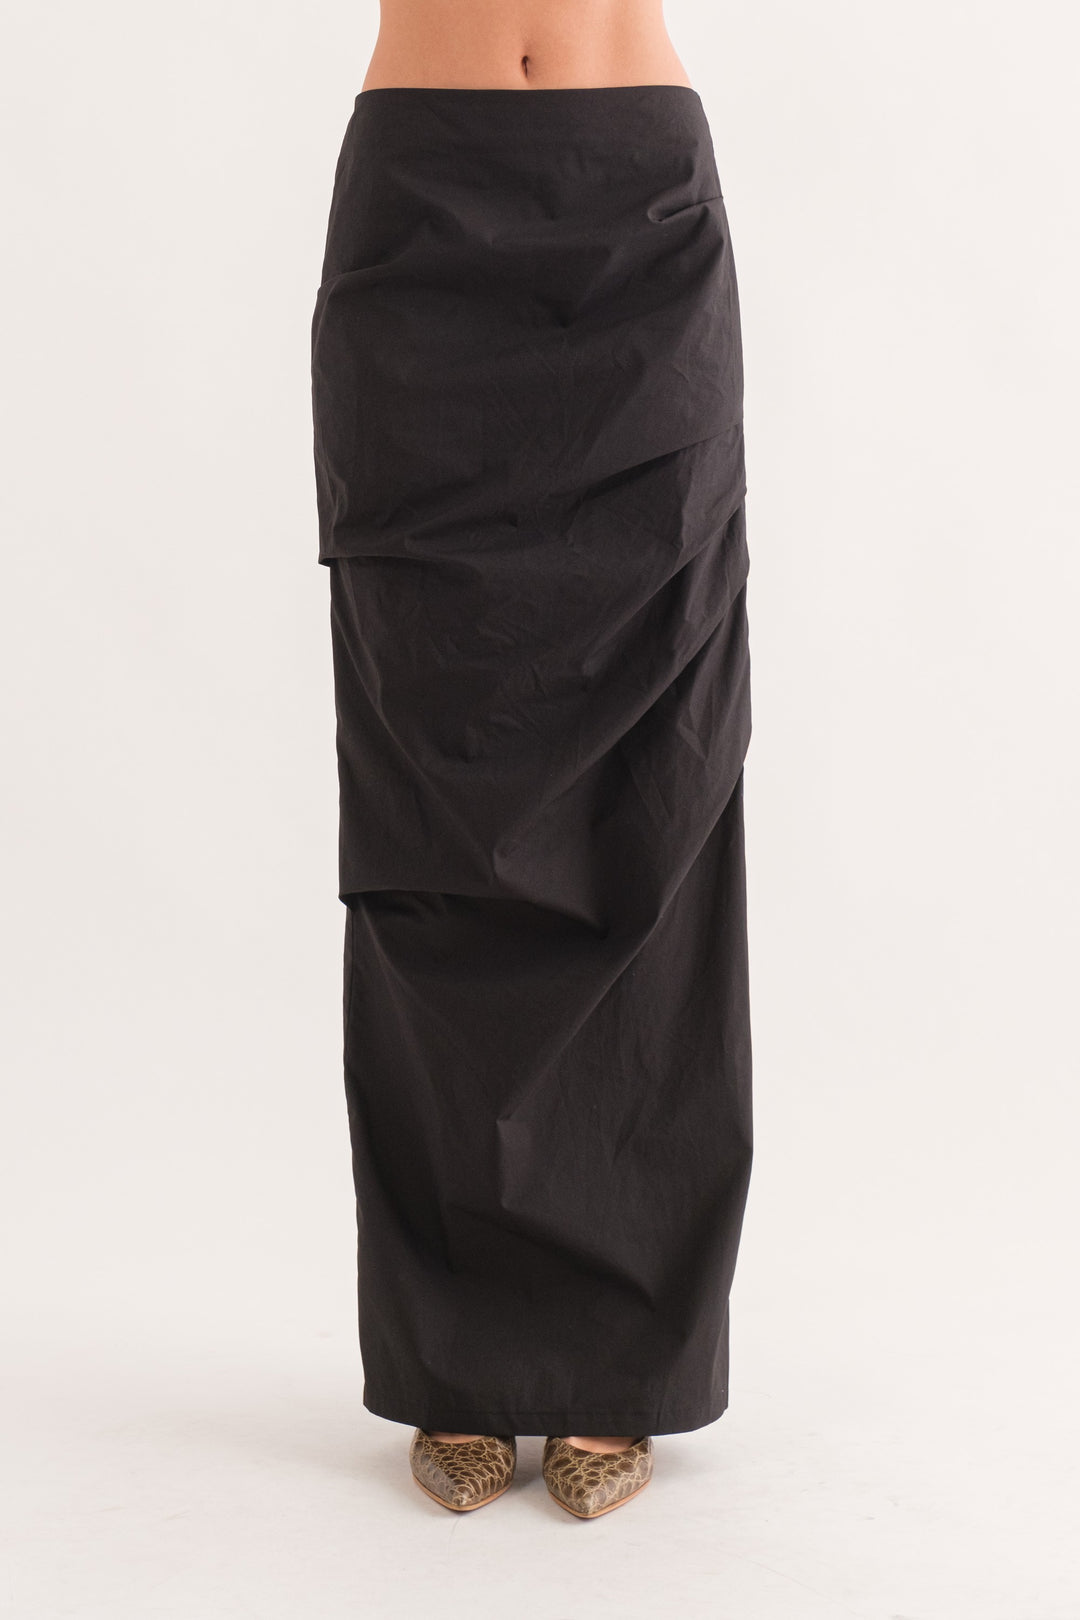 Athens Draped Maxi Skirt - Black